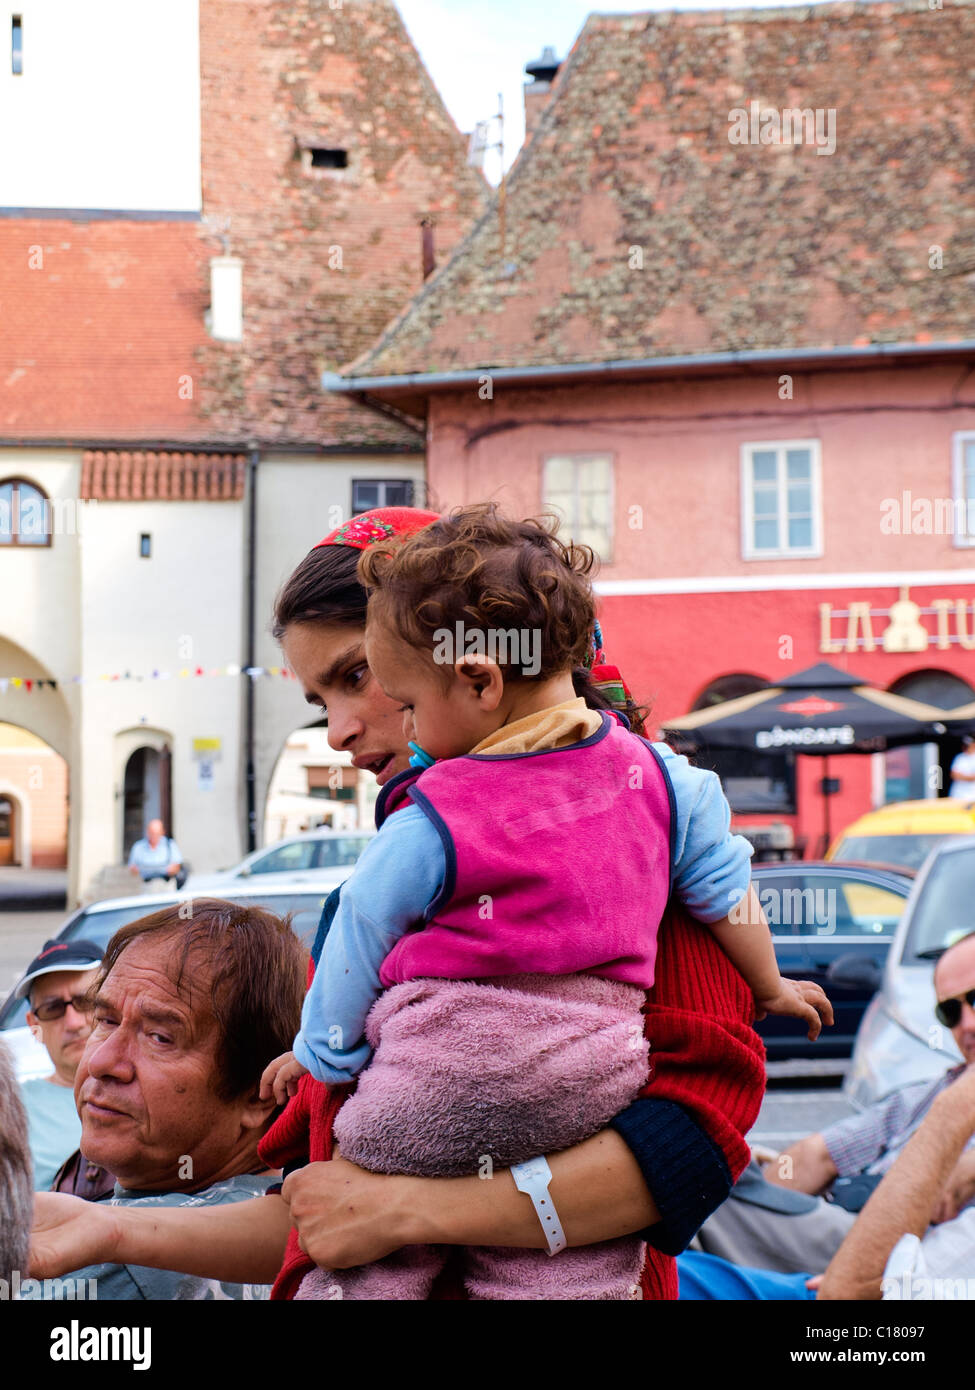 Gipsy Frau Bettler, halten ein kleines Kind beim betteln um ein offenes Restaurant in Rumänien. Stockfoto